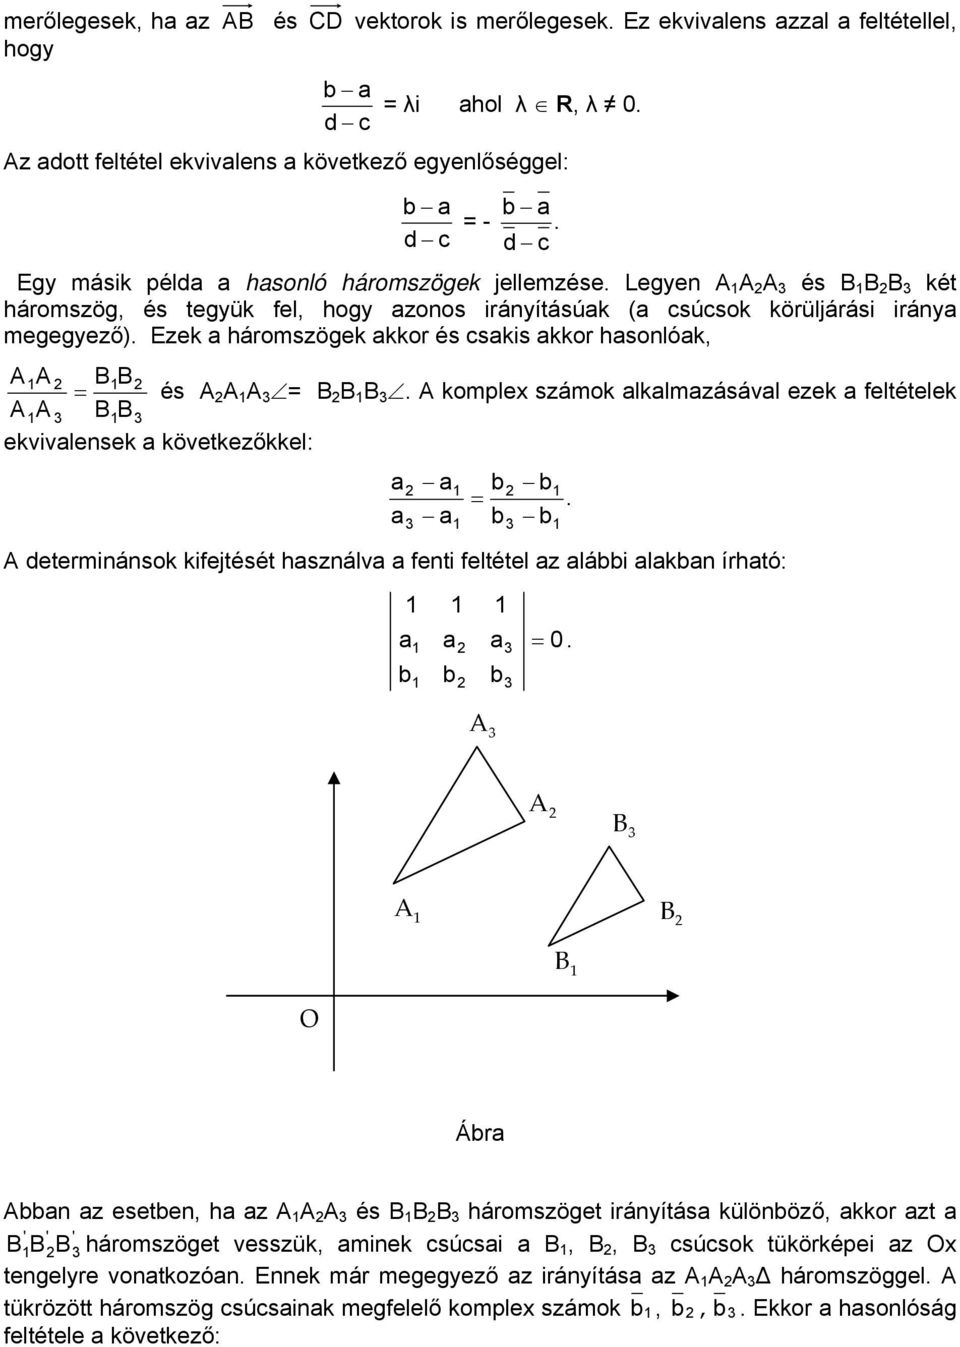 Ezek háromszögek kkor és cskis kkor hsonlók, B B és B B B. komplex számok lklmzásávl ezek feltételek BB ekvivlensek következőkkel: determinánsok kifejtését hsználv fenti feltétel z lái lkn írhtó: 0.